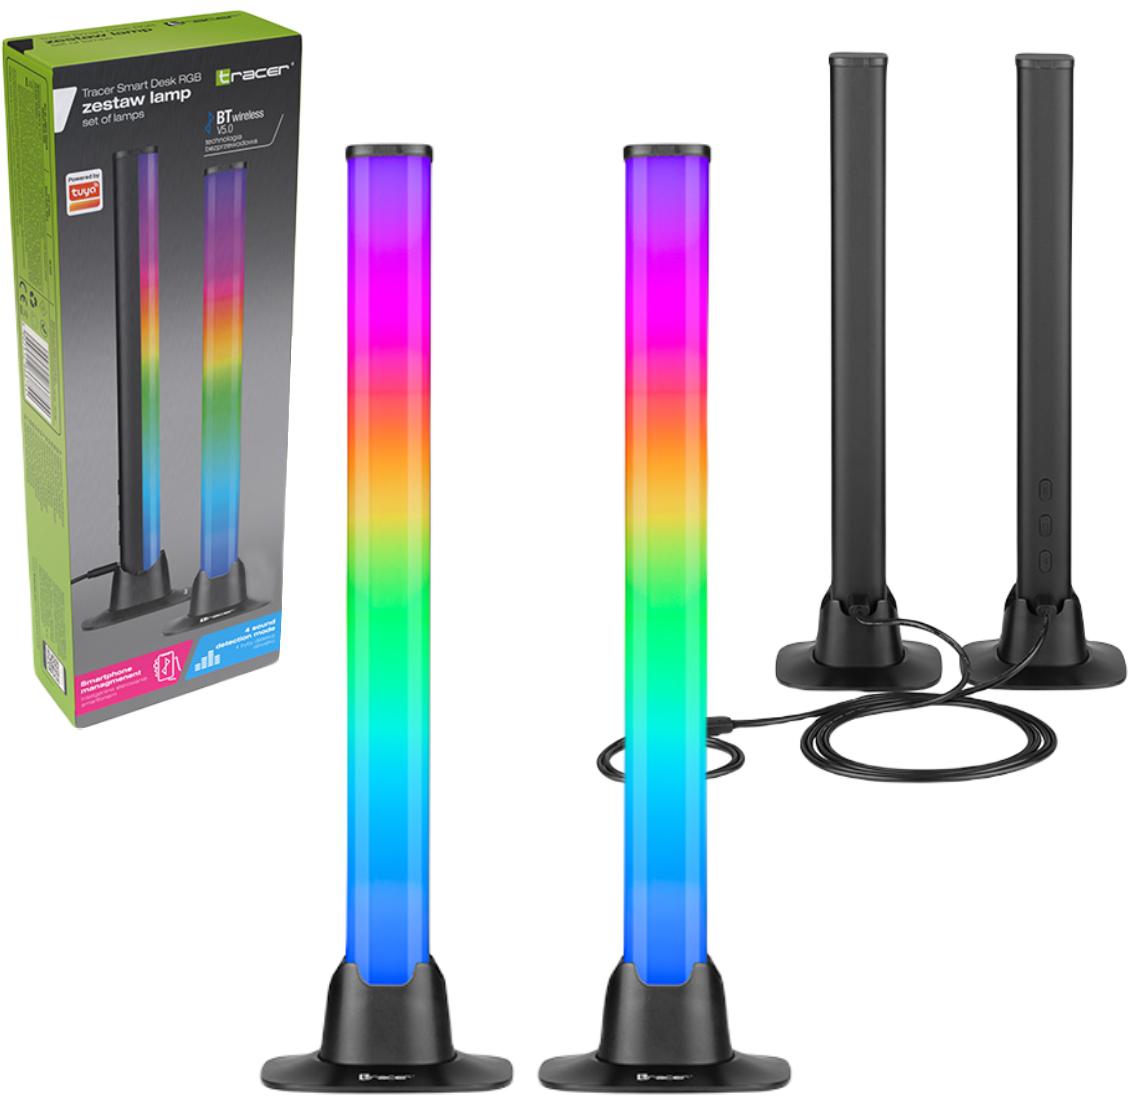 Zestaw lamp Tracer Smart Desk RGB Bluetooth 5.0 – najważniejsze cechy: